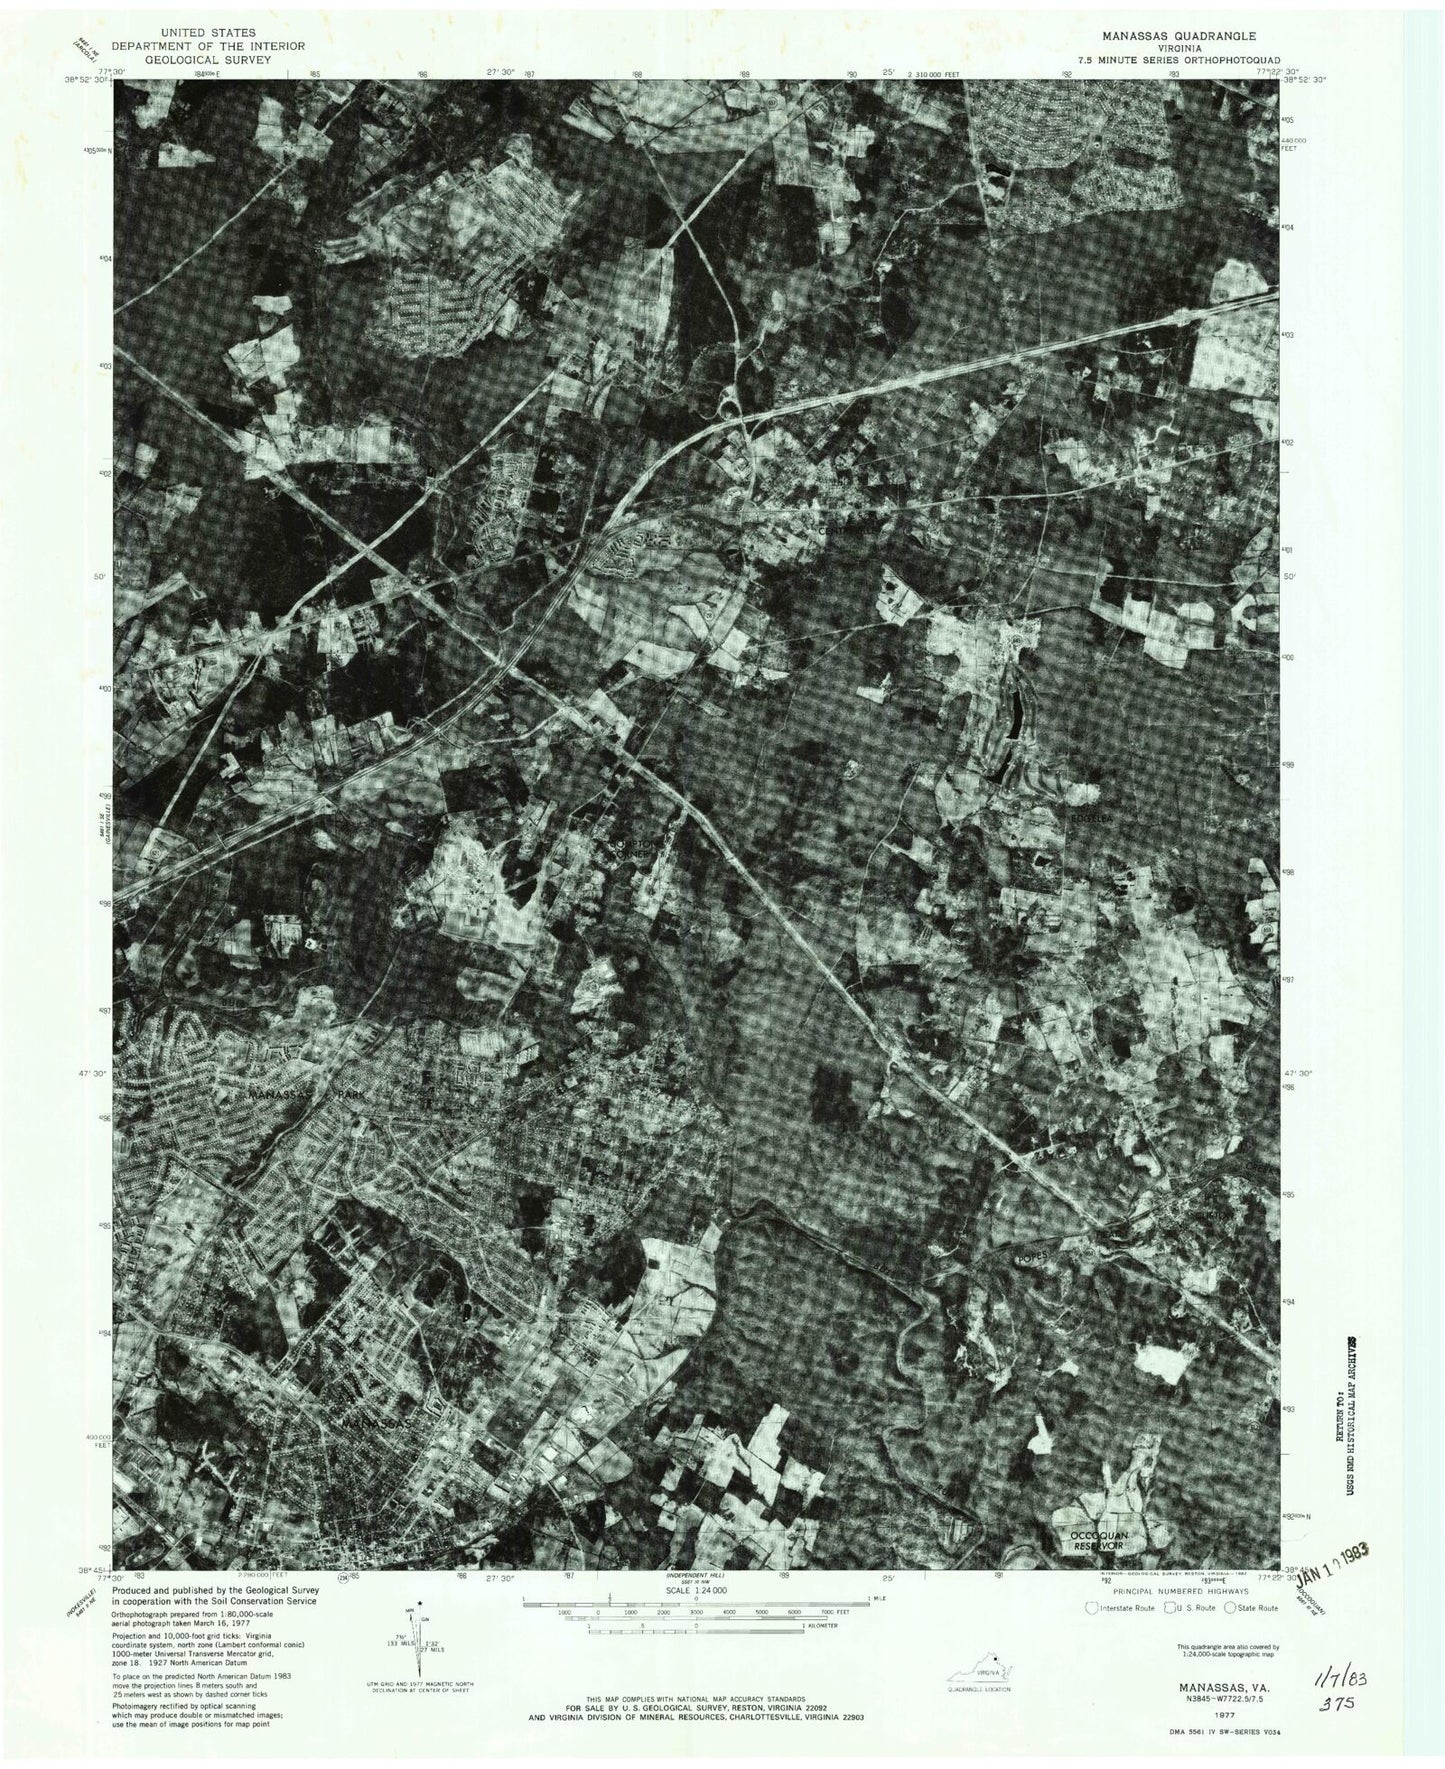 Classic USGS Manassas Virginia 7.5'x7.5' Topo Map Image